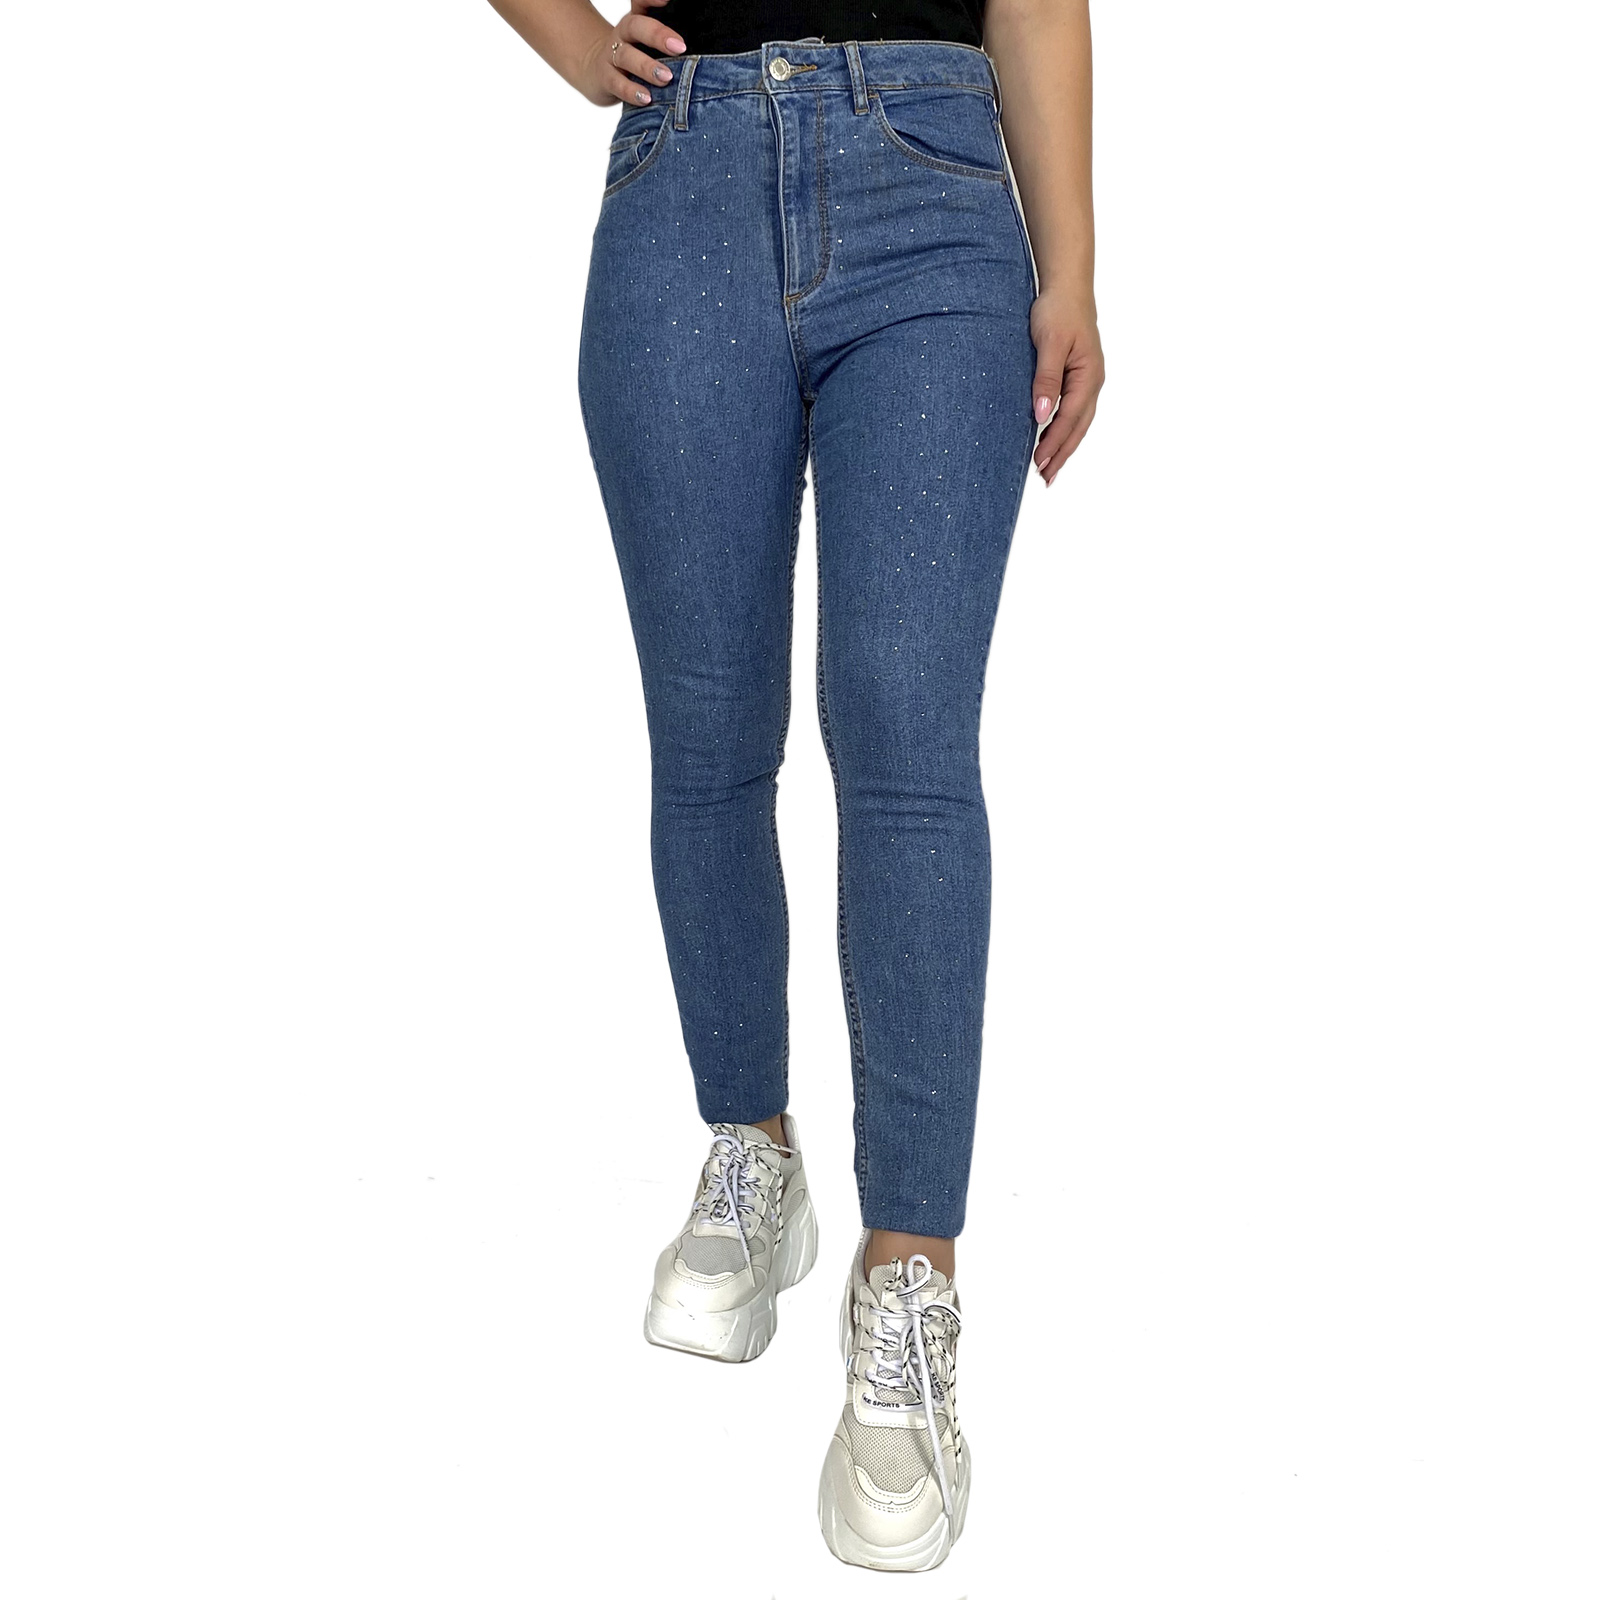 Купить в интернет магазине женские джинсы скинни